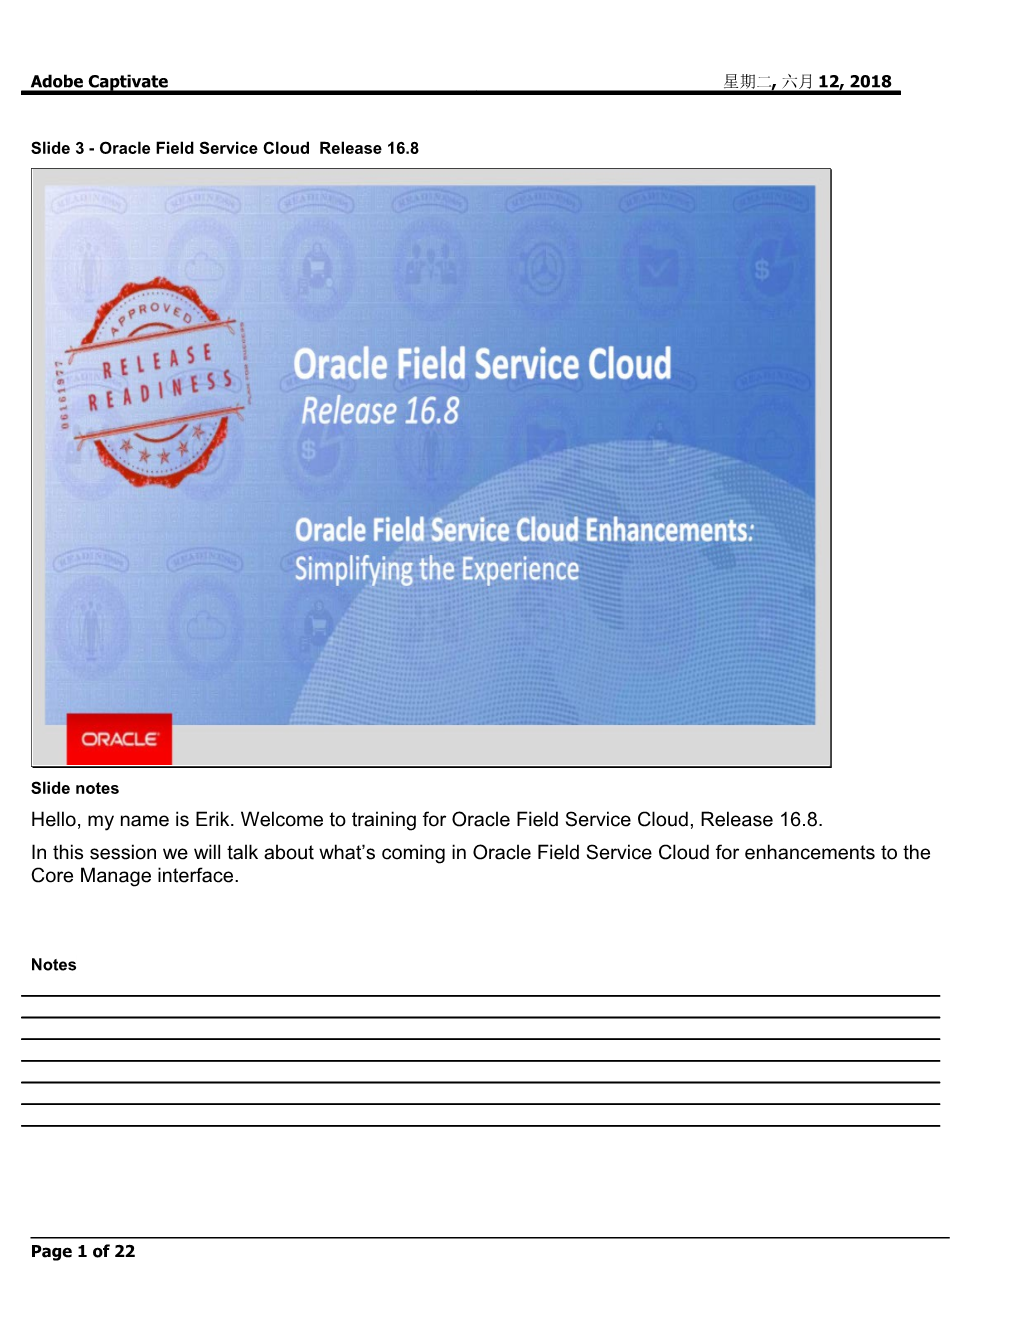 Slide 3 - Oracle Field Service Cloud Release 16.8